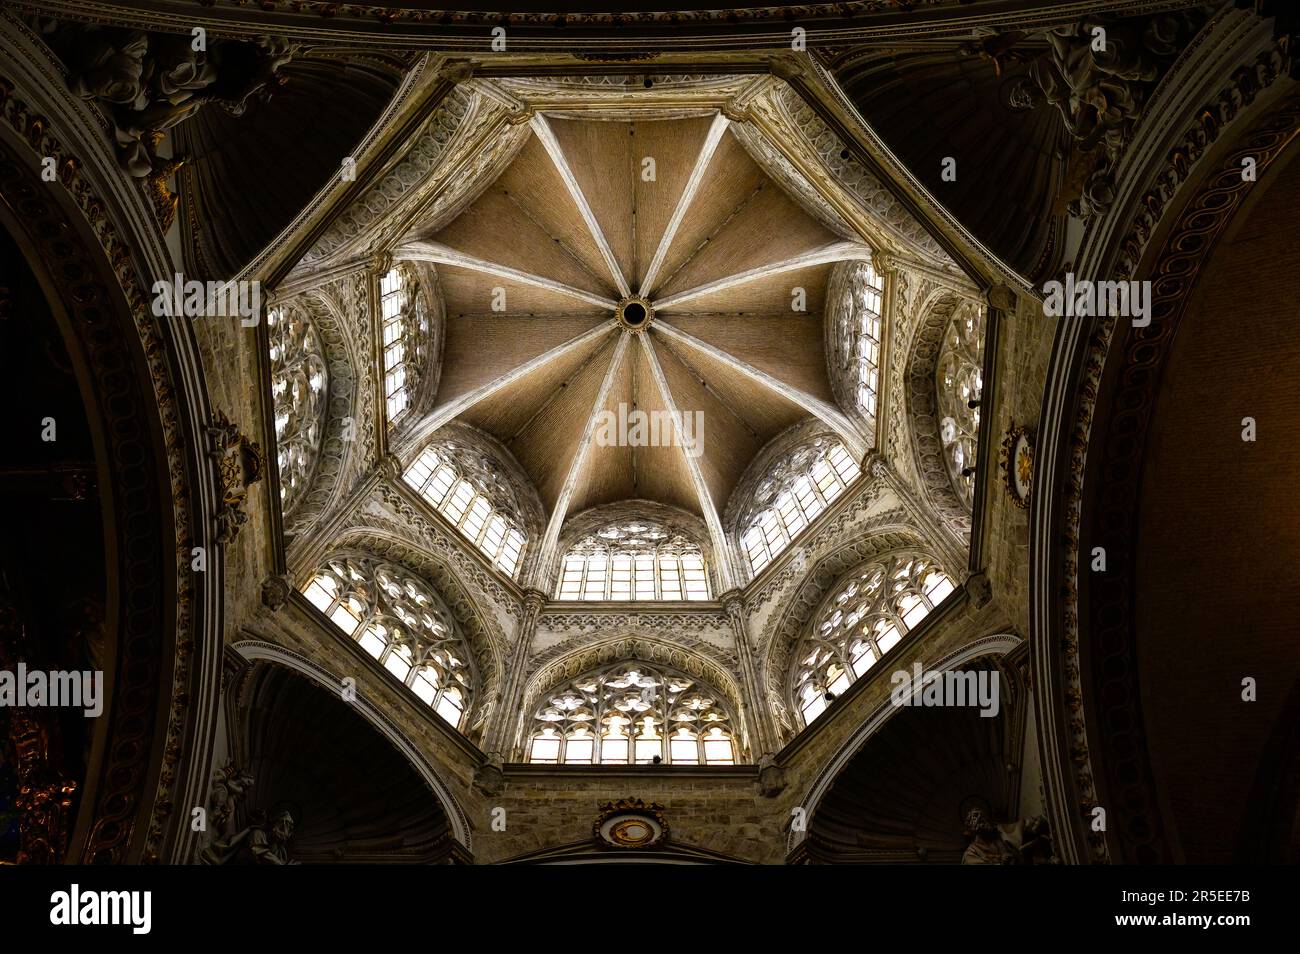 Valencia, Spanien - 17. Juli 2022: Kuppel oder Kuppel mit Oberlichtern. Architektonische Innenelemente in der Metropolitanischen Kathedrale – Basilika Assumpti Stockfoto